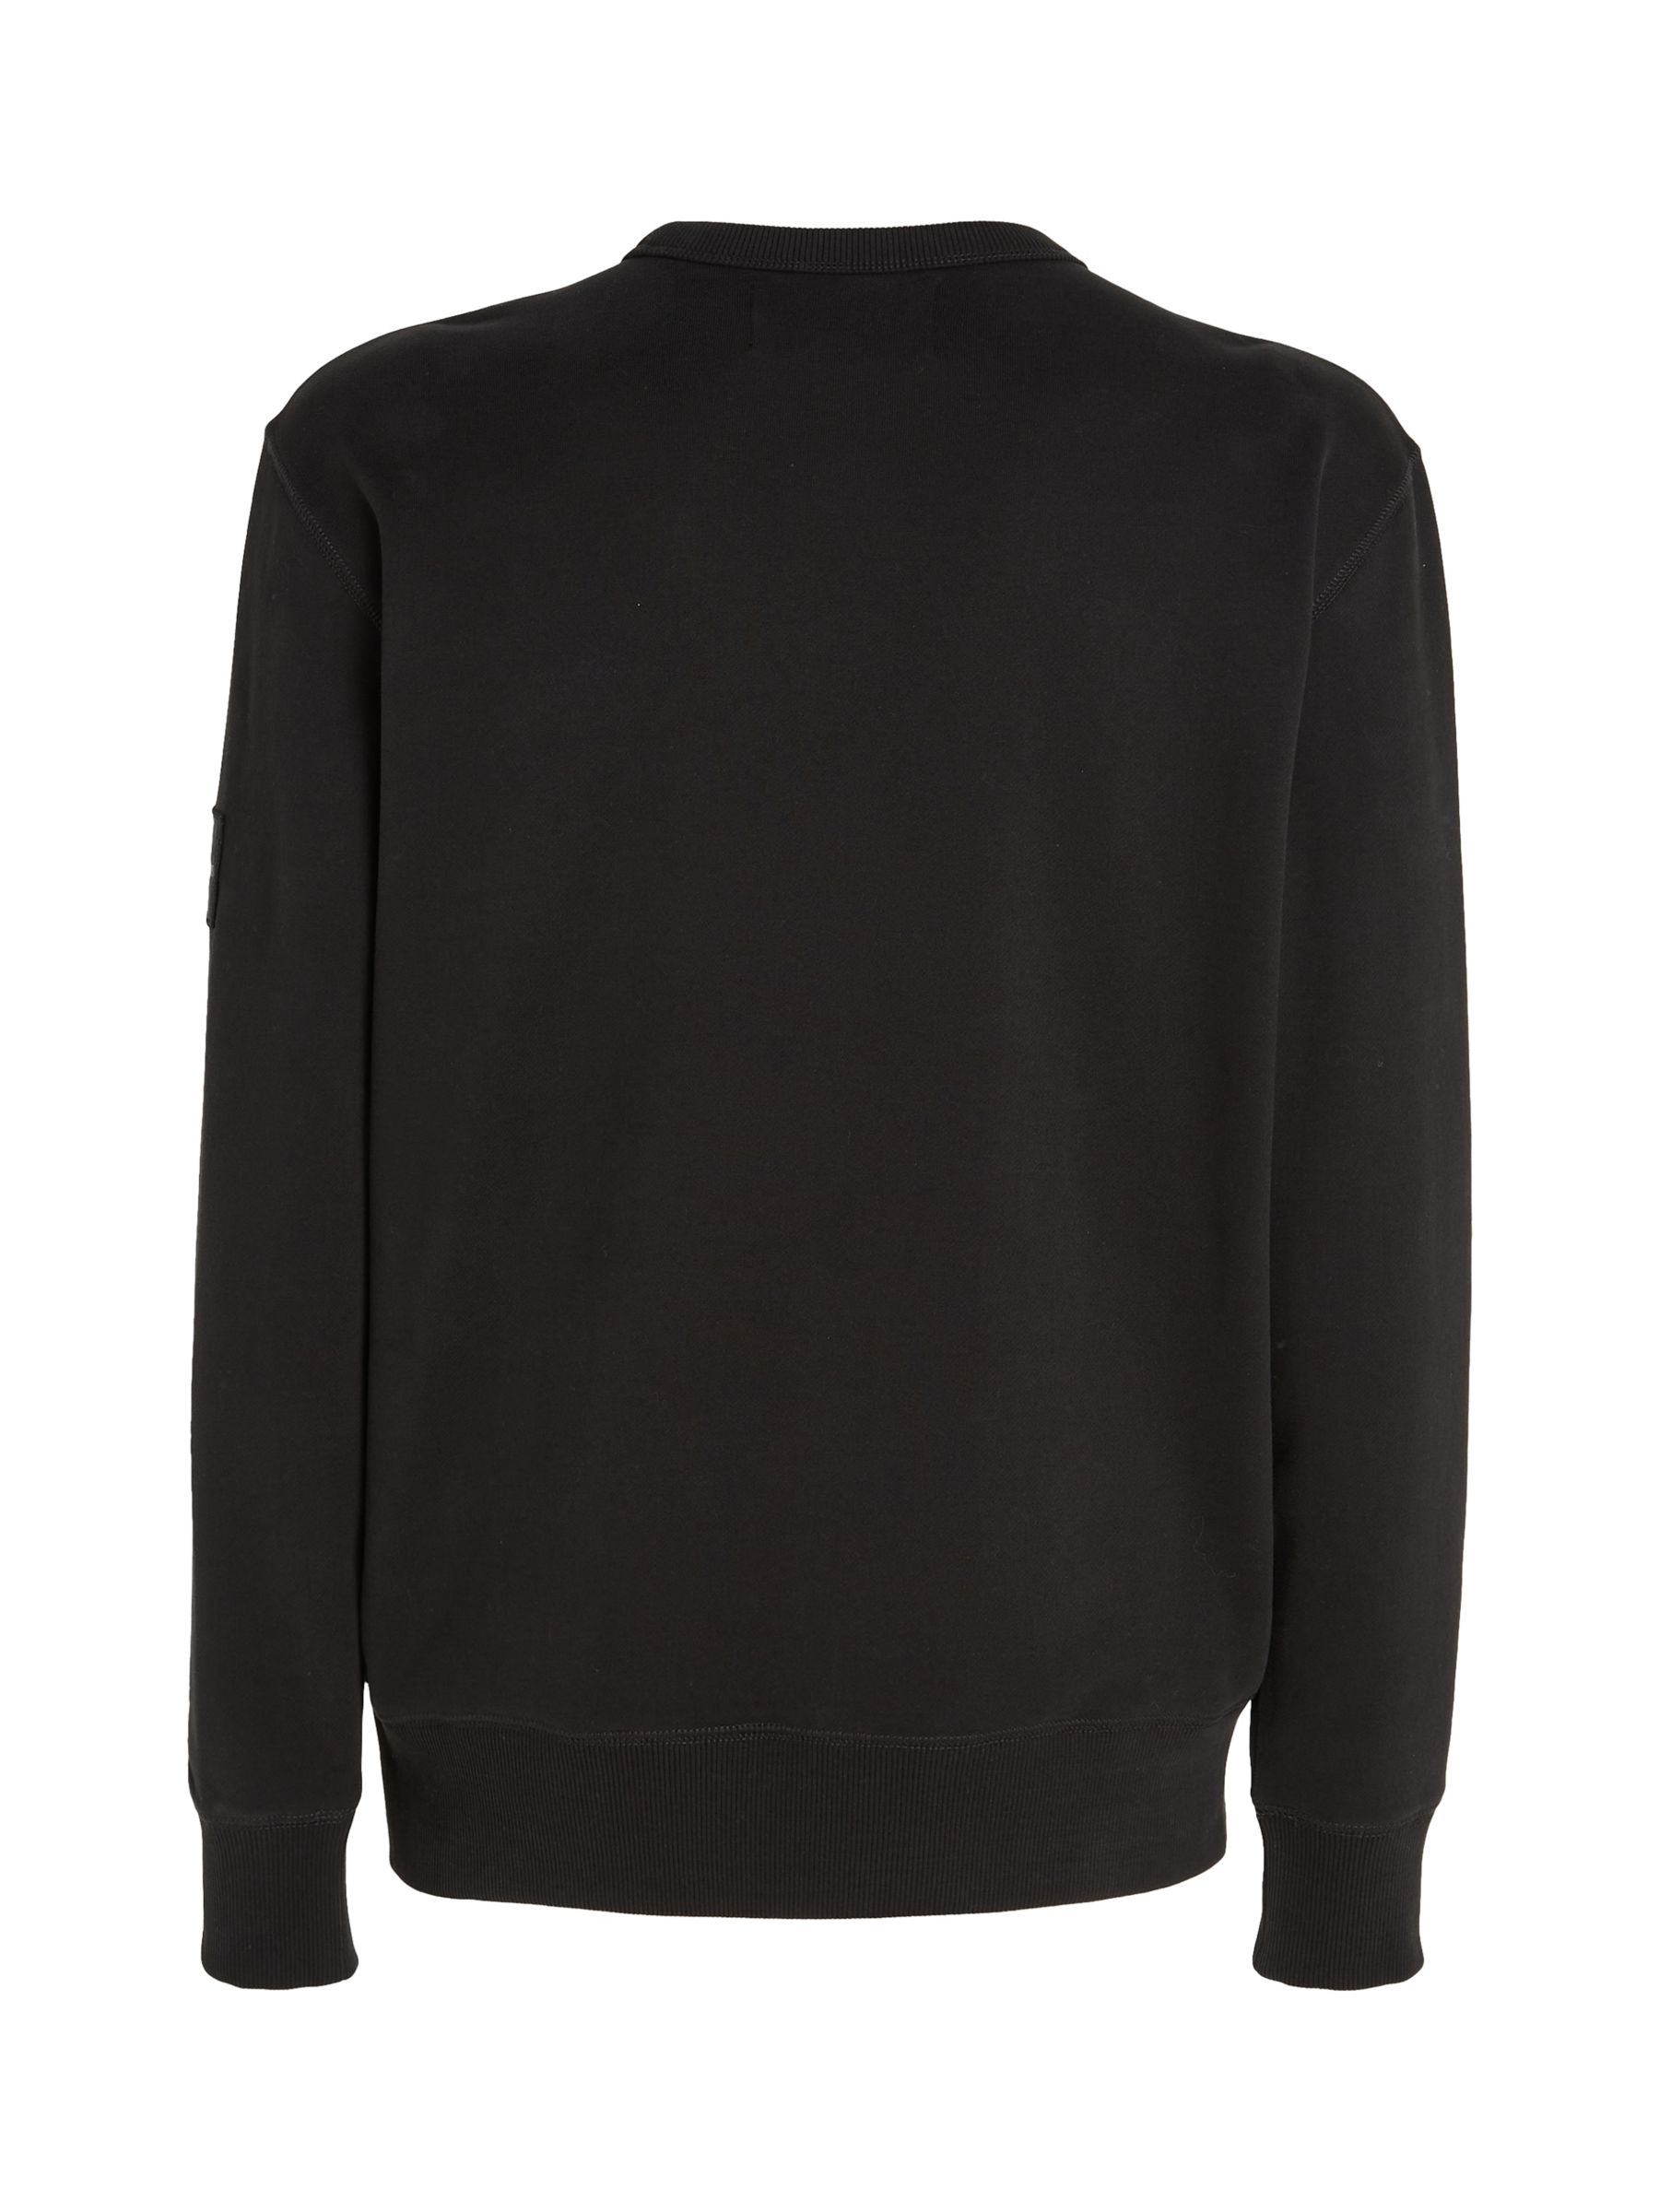 Calvin Klein Monologo Sweatshirt, Black at John Lewis & Partners